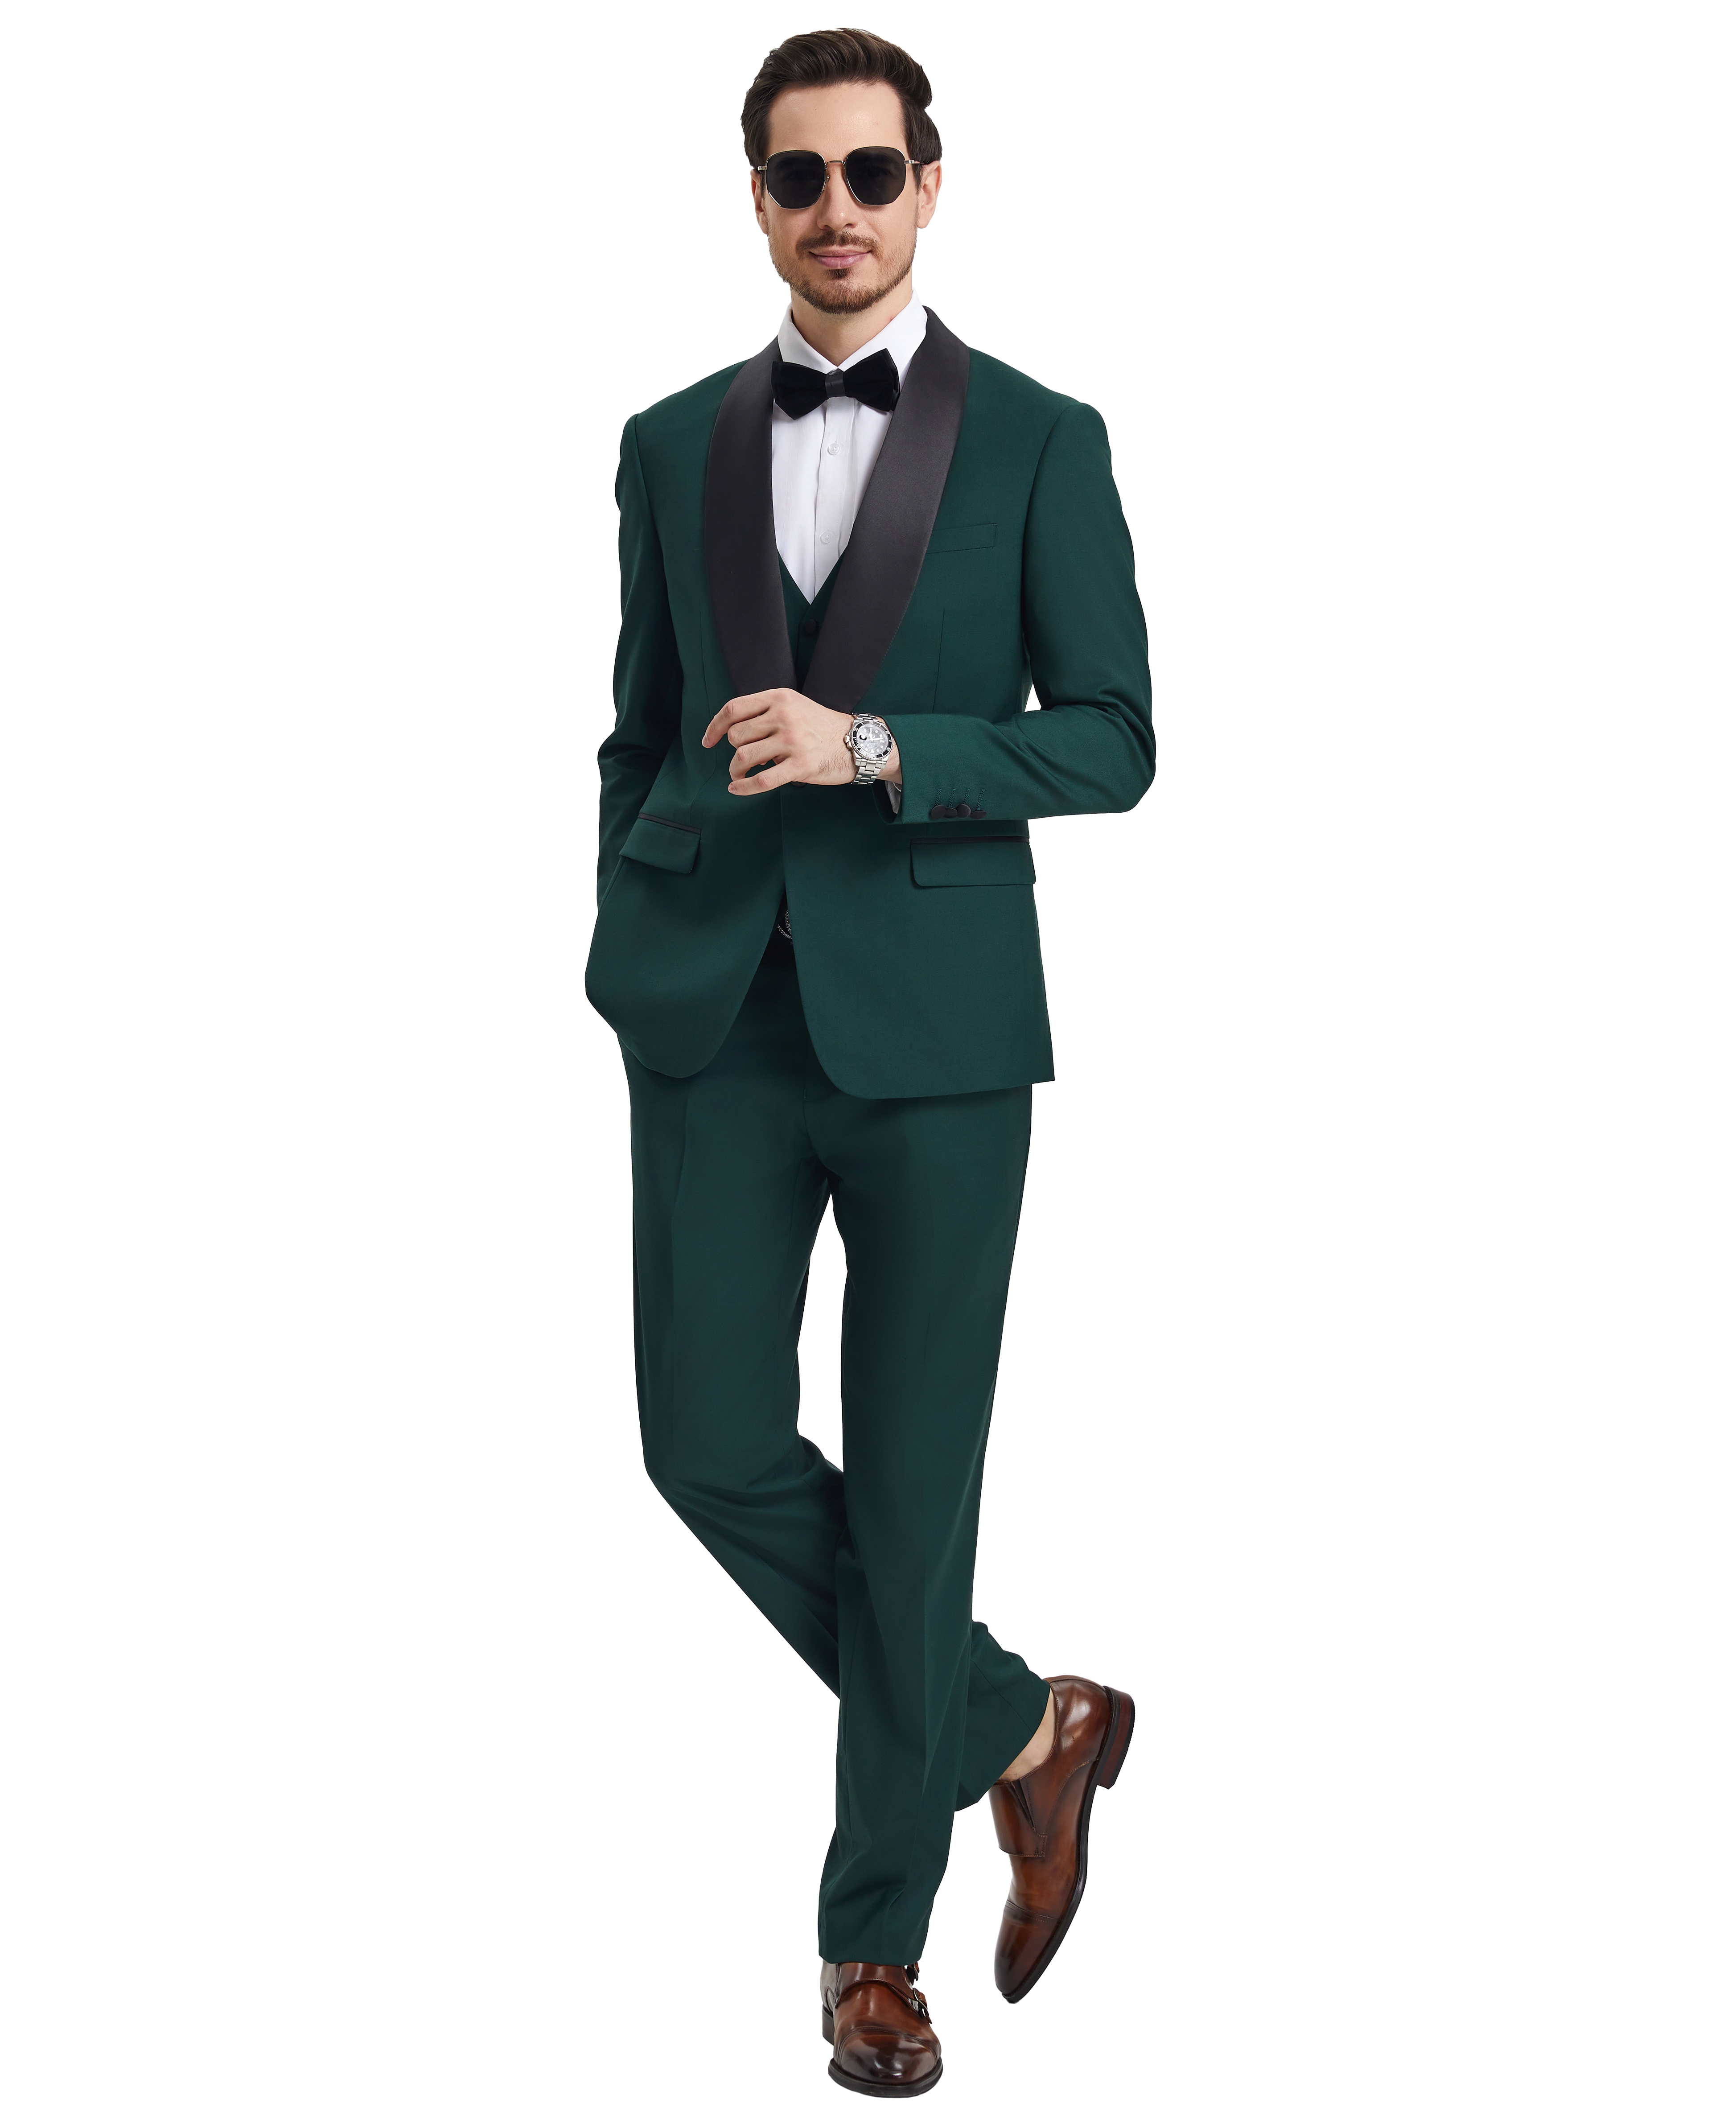 Stacy Adams 3 PC Dark Green Solid Tuxedo Mens Suit